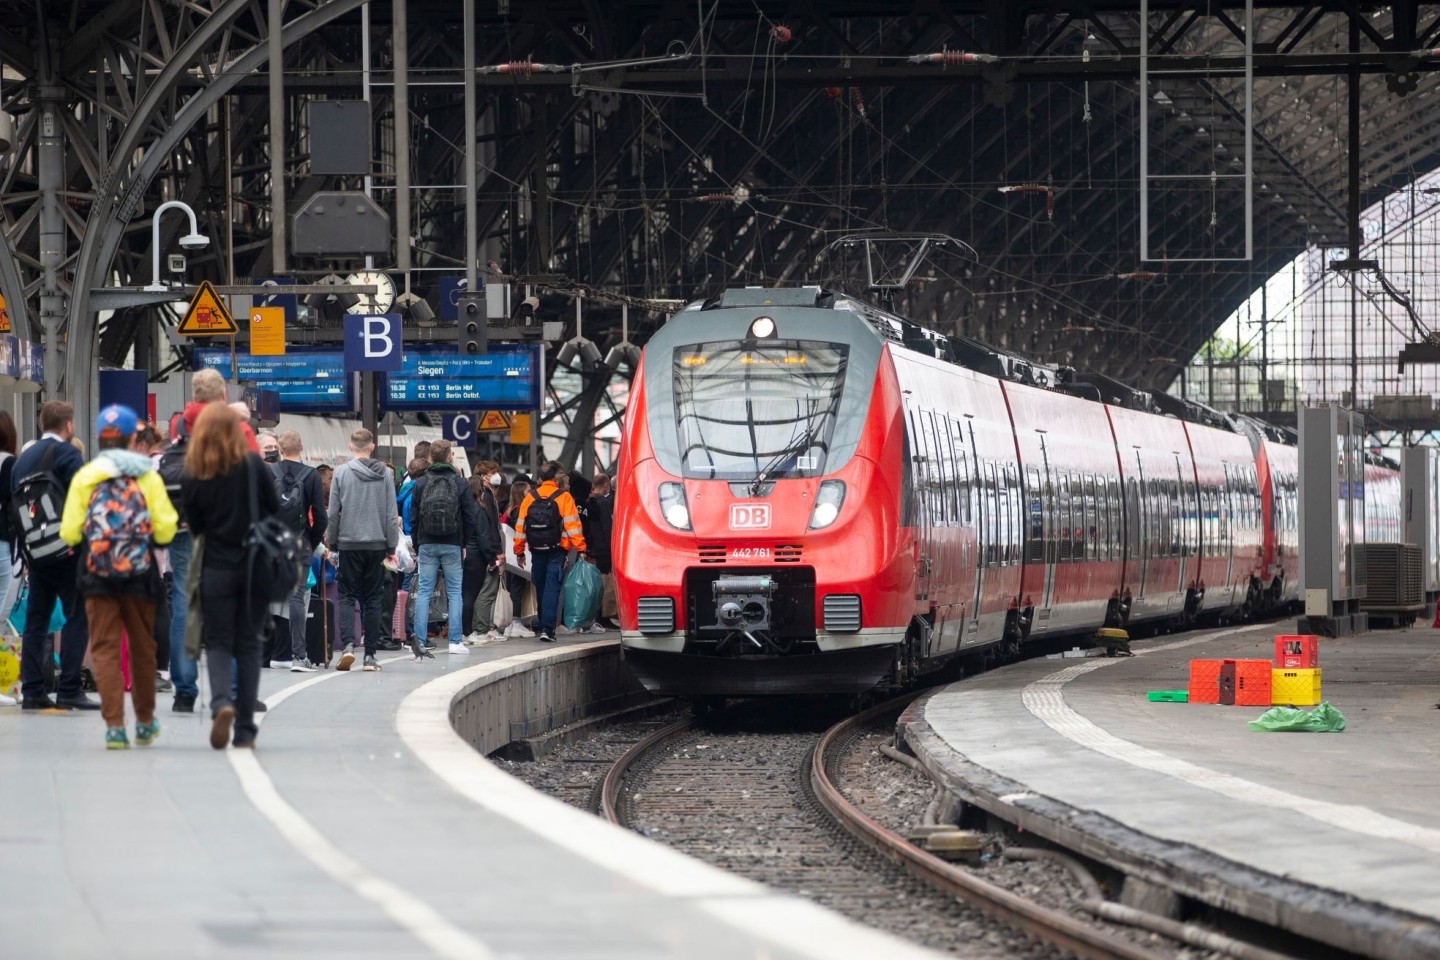 Bahhnreisende warten auf dem Bahnsteig auf die Einfahrt des Zuges im Kölner Hauptbahnhof. Der Verkehr läuft wieder.